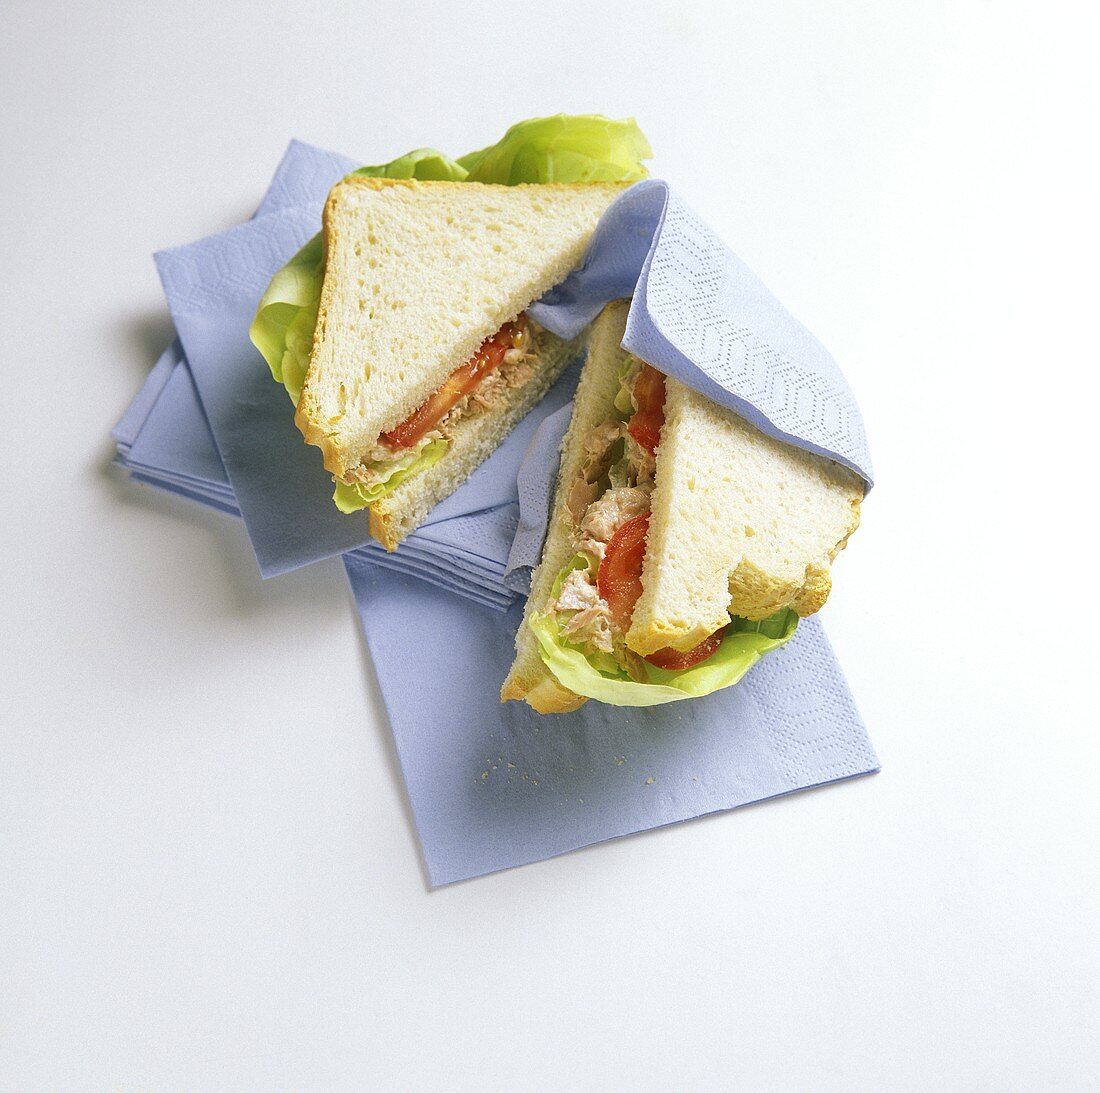 Sandwich mit Thunfisch und Tomaten auf Servietten